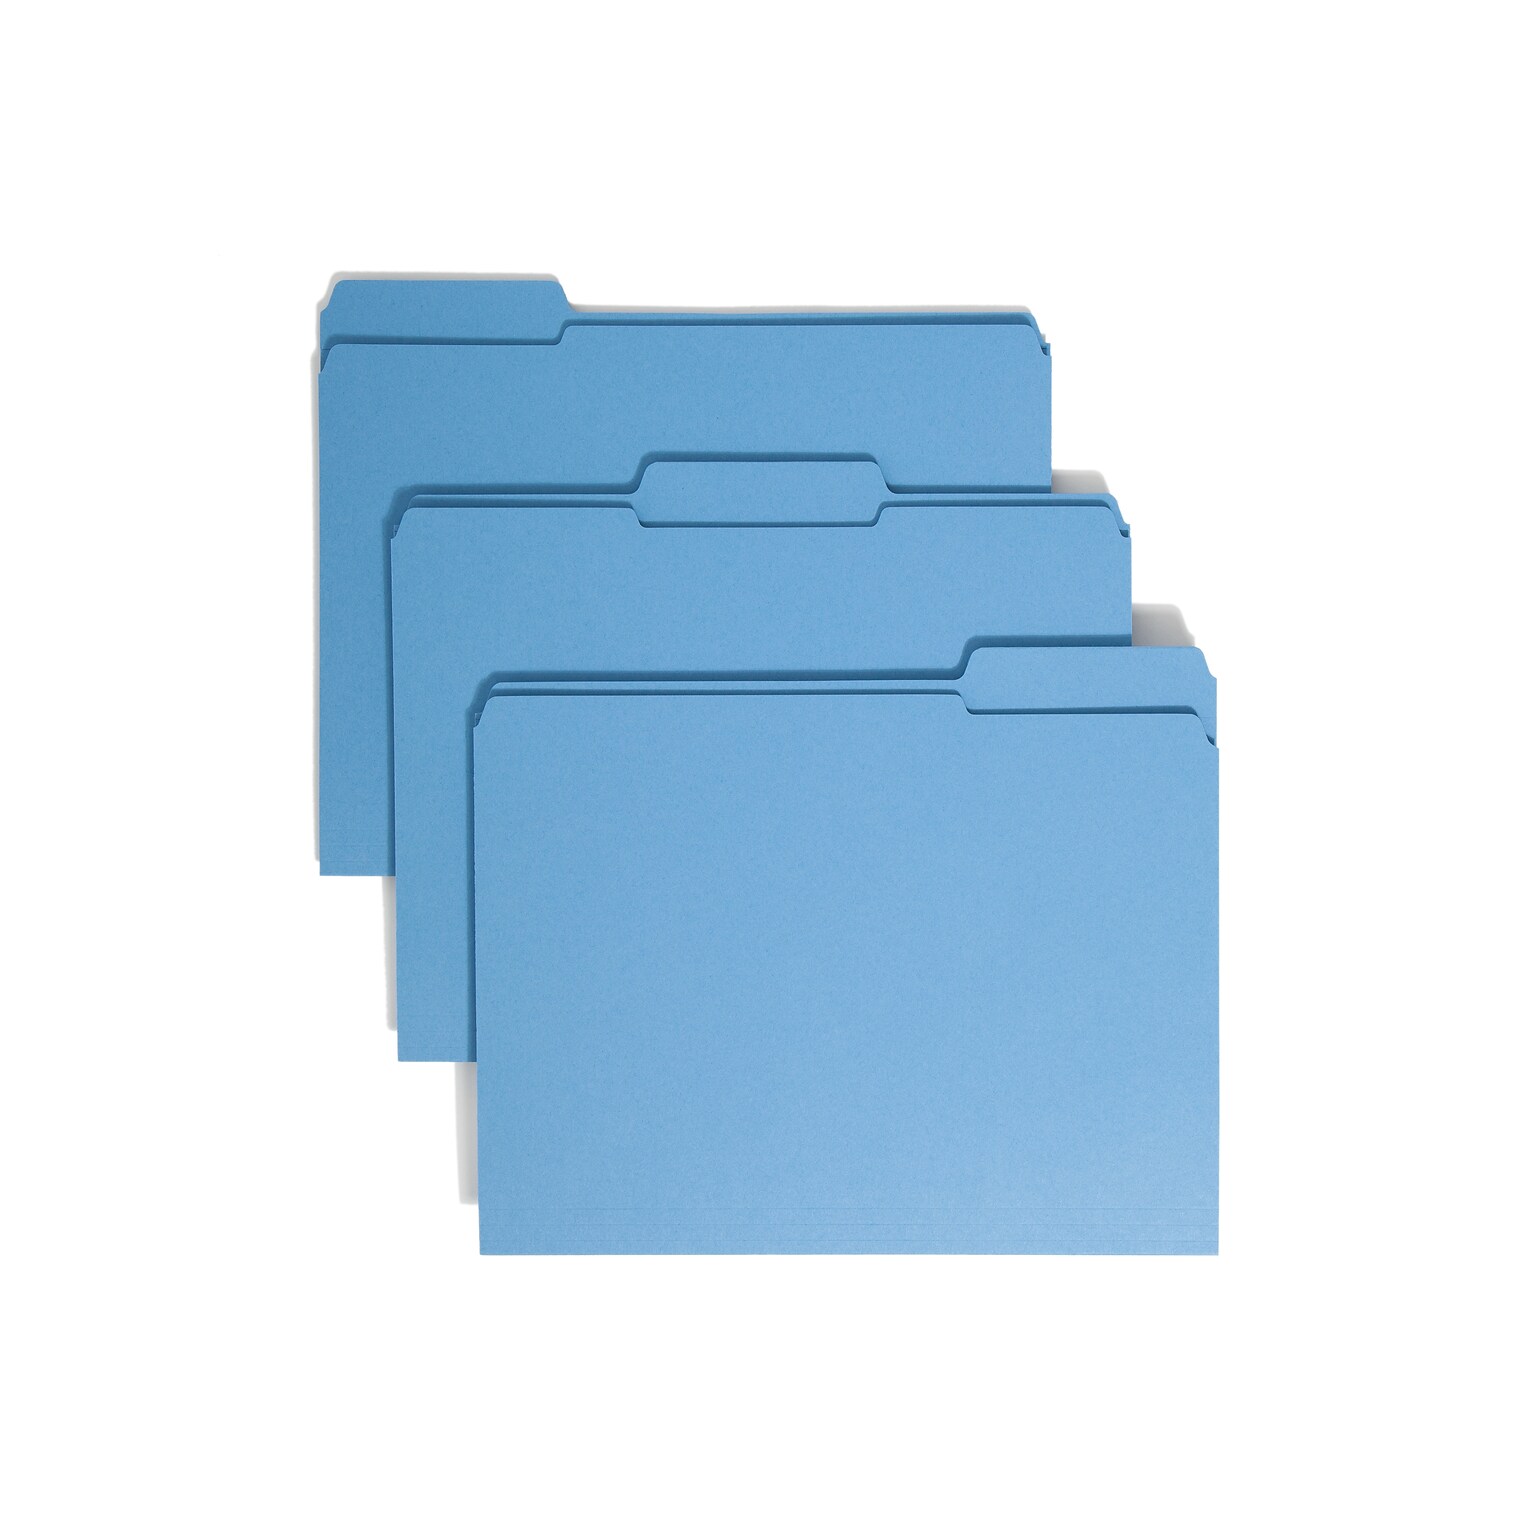 Smead File Folder, Reinforced 1/3-Cut Tab, Letter Size, Blue, 100/Box (12034)